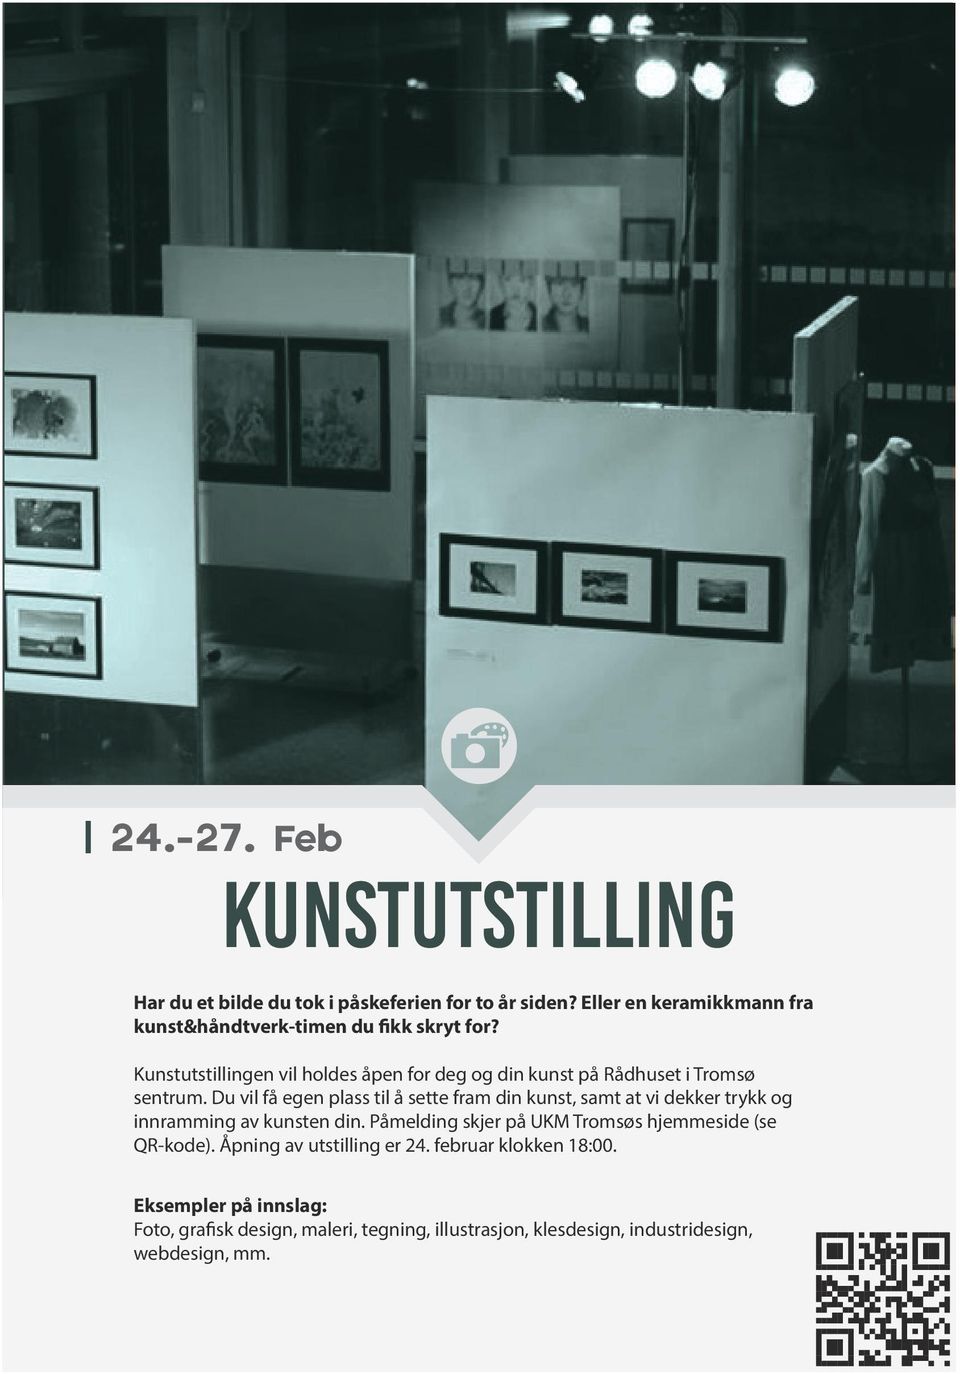 Kunstutstillingen vil holdes åpen for deg og din kunst på Rådhuset i Tromsø sentrum.